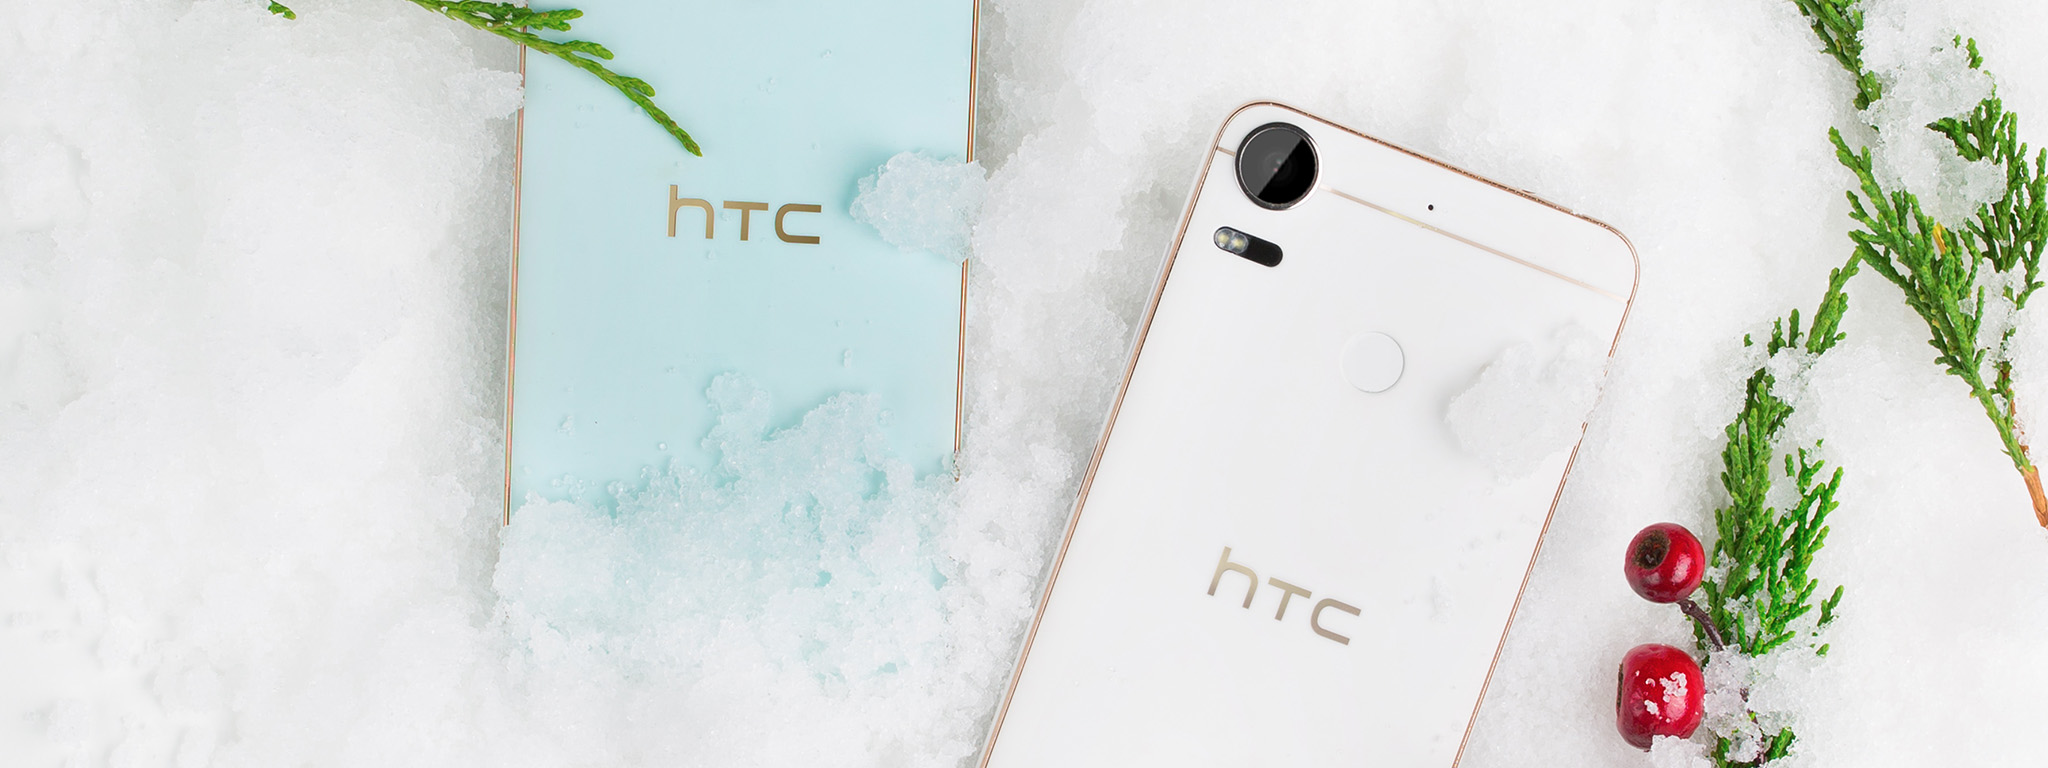 HTC Desire 10 Pro có giá bán 7.990.000 đồng, được bán ra từ ngày mai